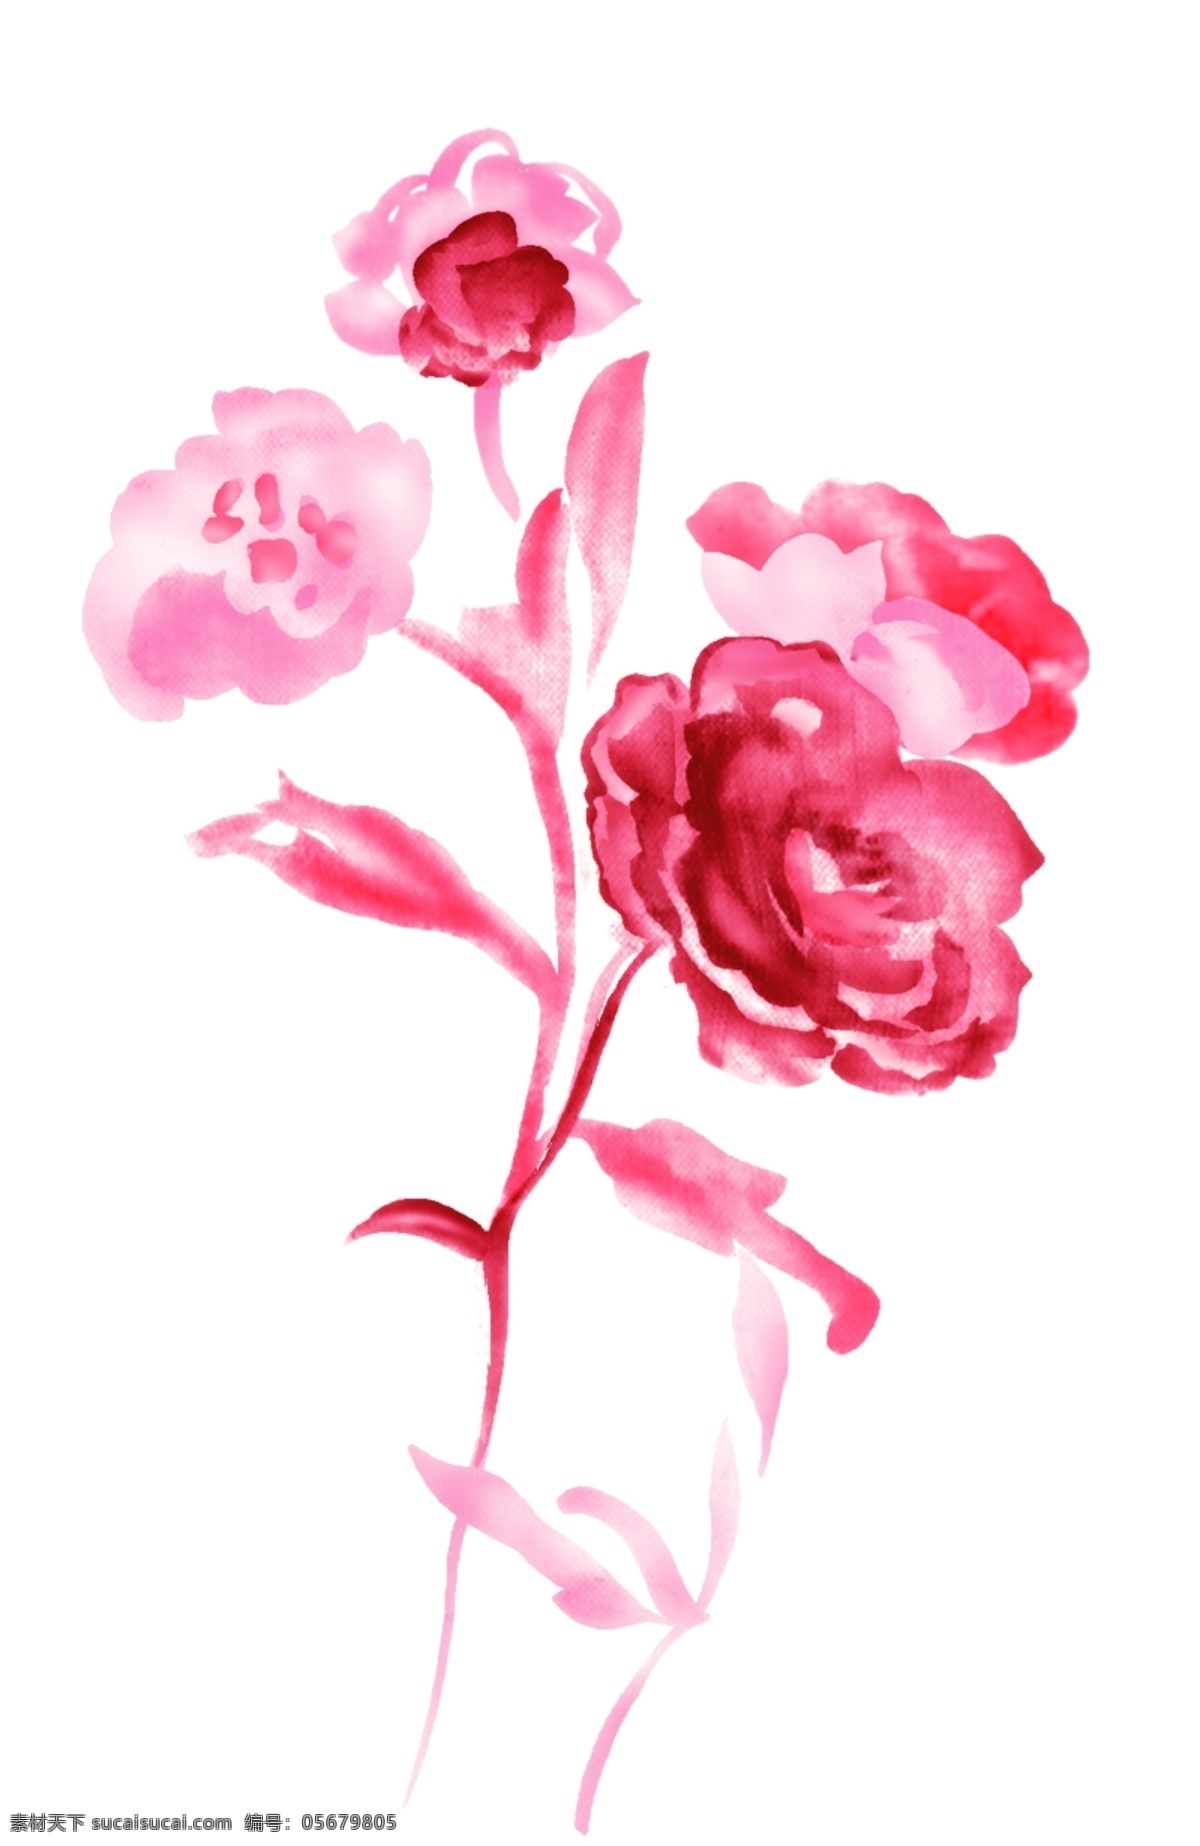 精美 水墨 手绘 玫瑰 玫瑰素材 psd素材 源文件库